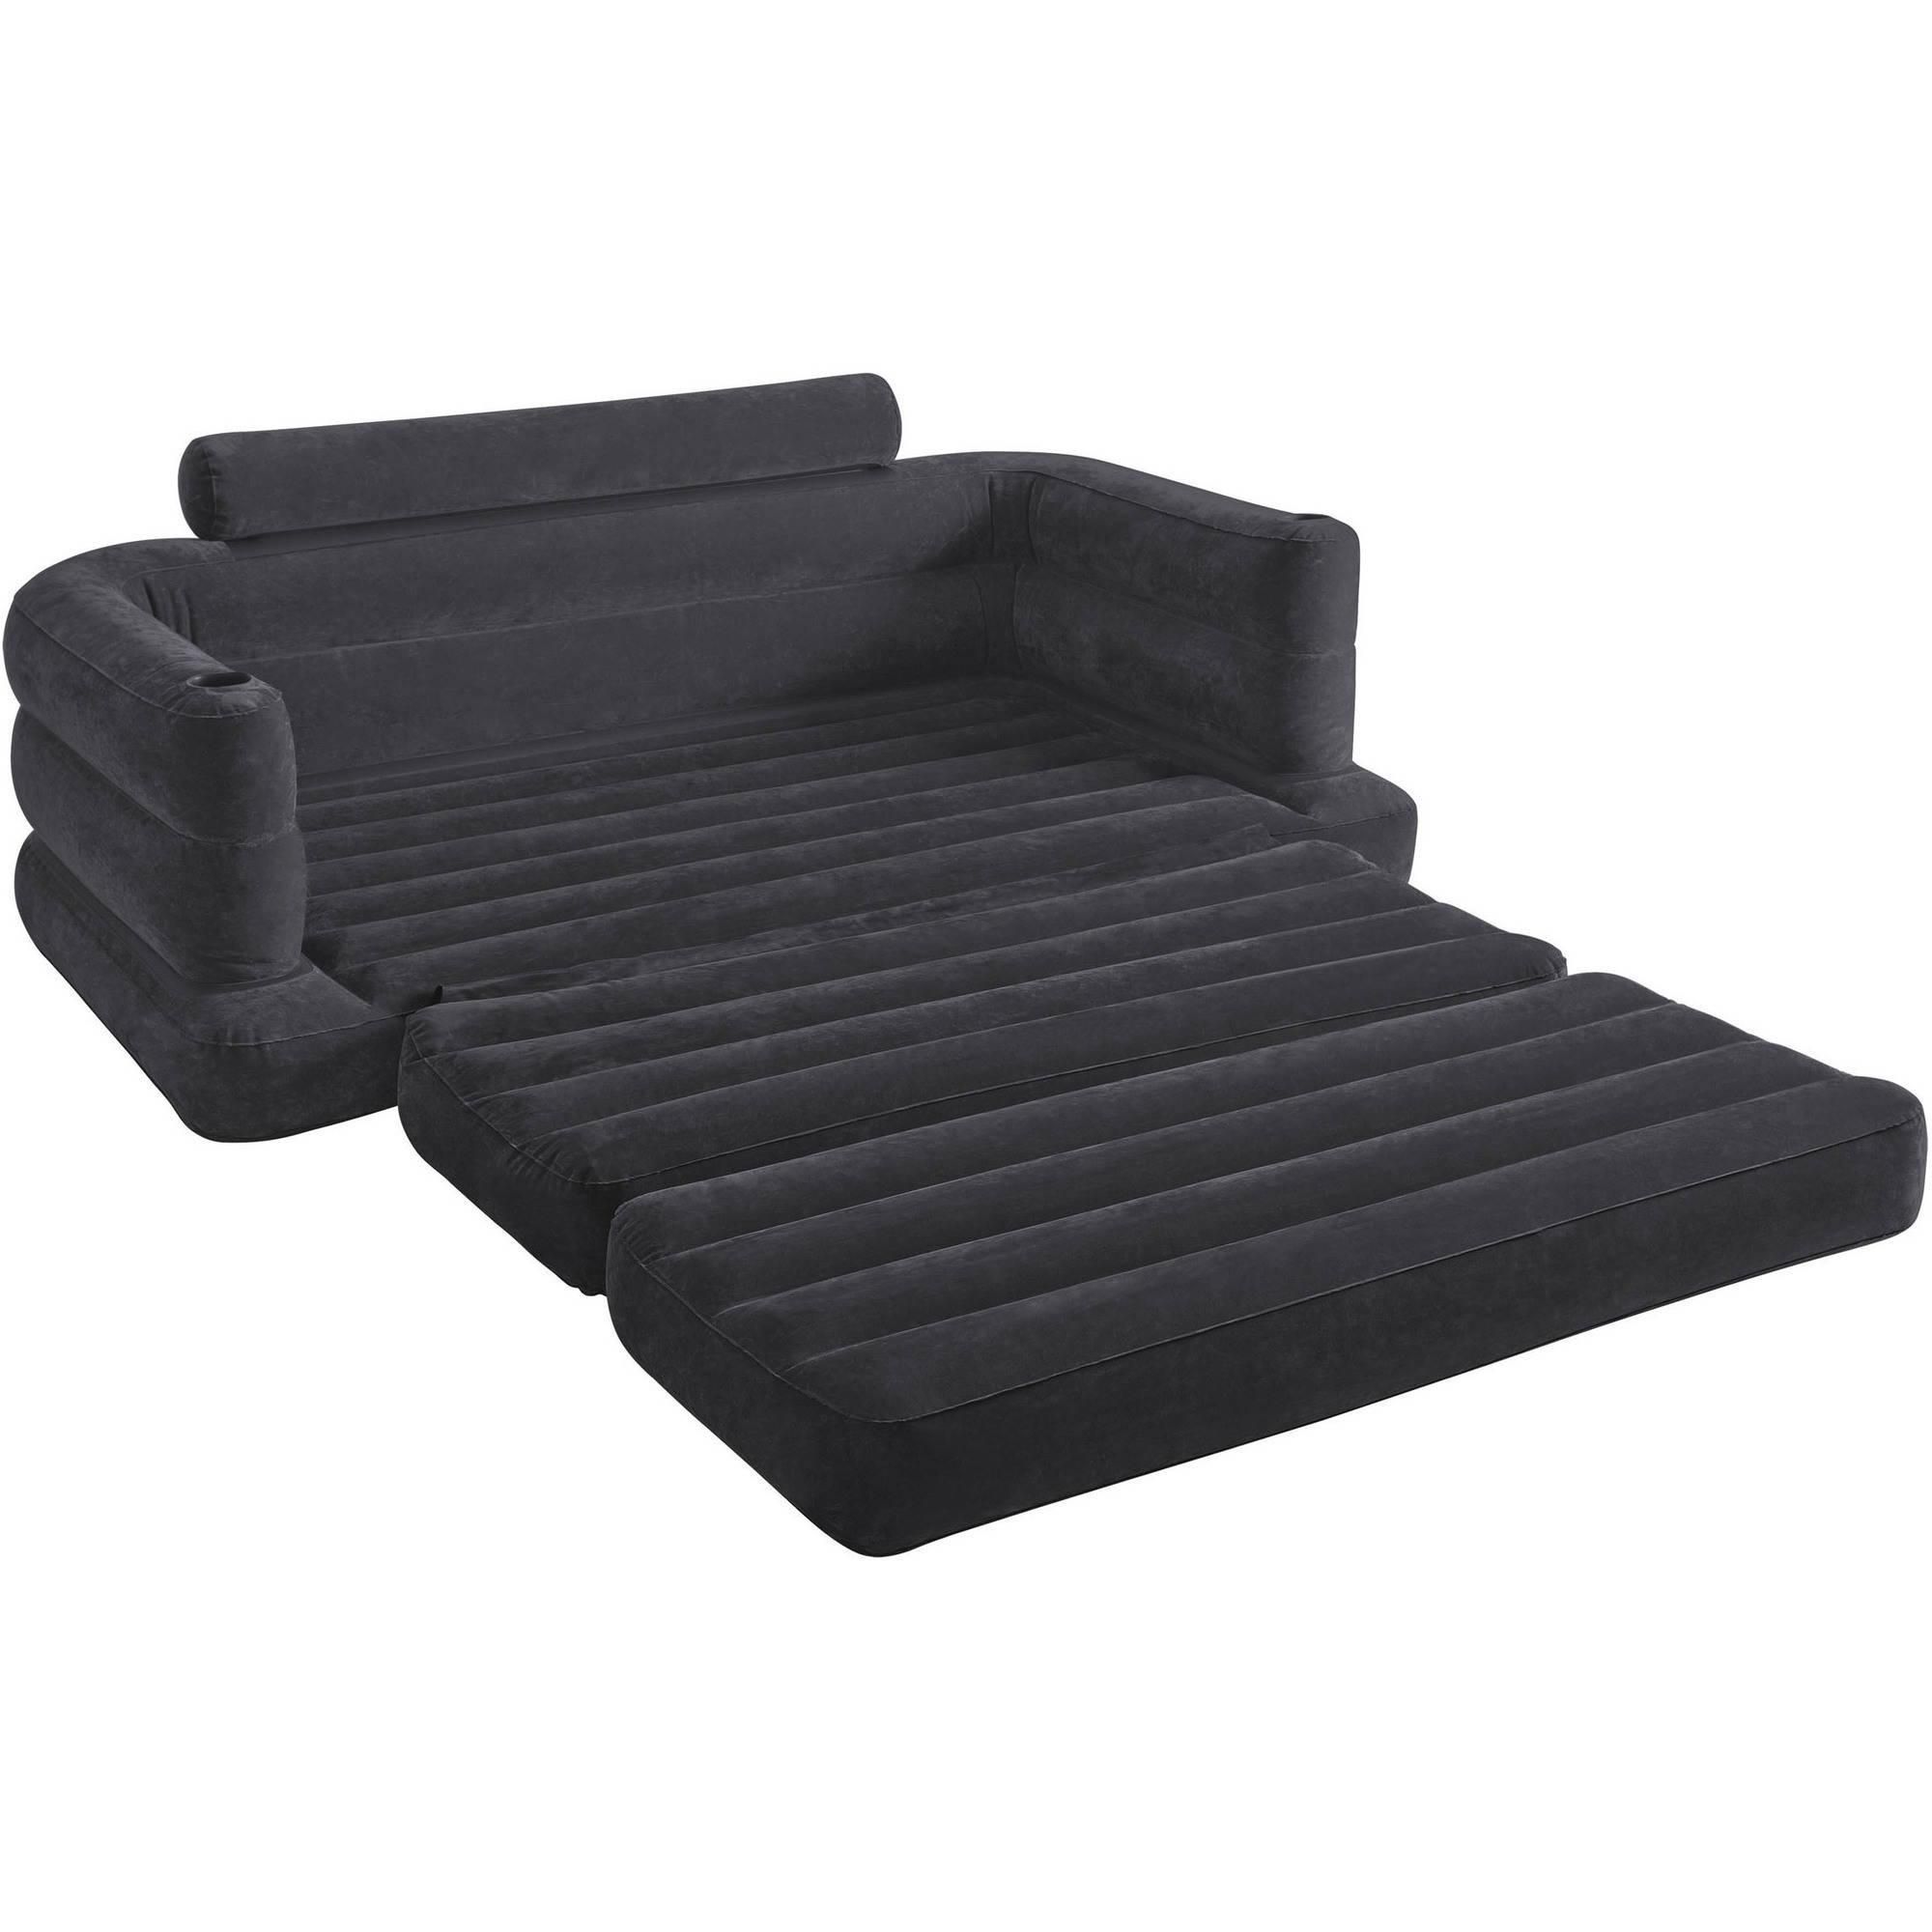 Intex Sofa Bed, Dark Grey | Ebay Throughout Intex Air Couches (View 20 of 20)